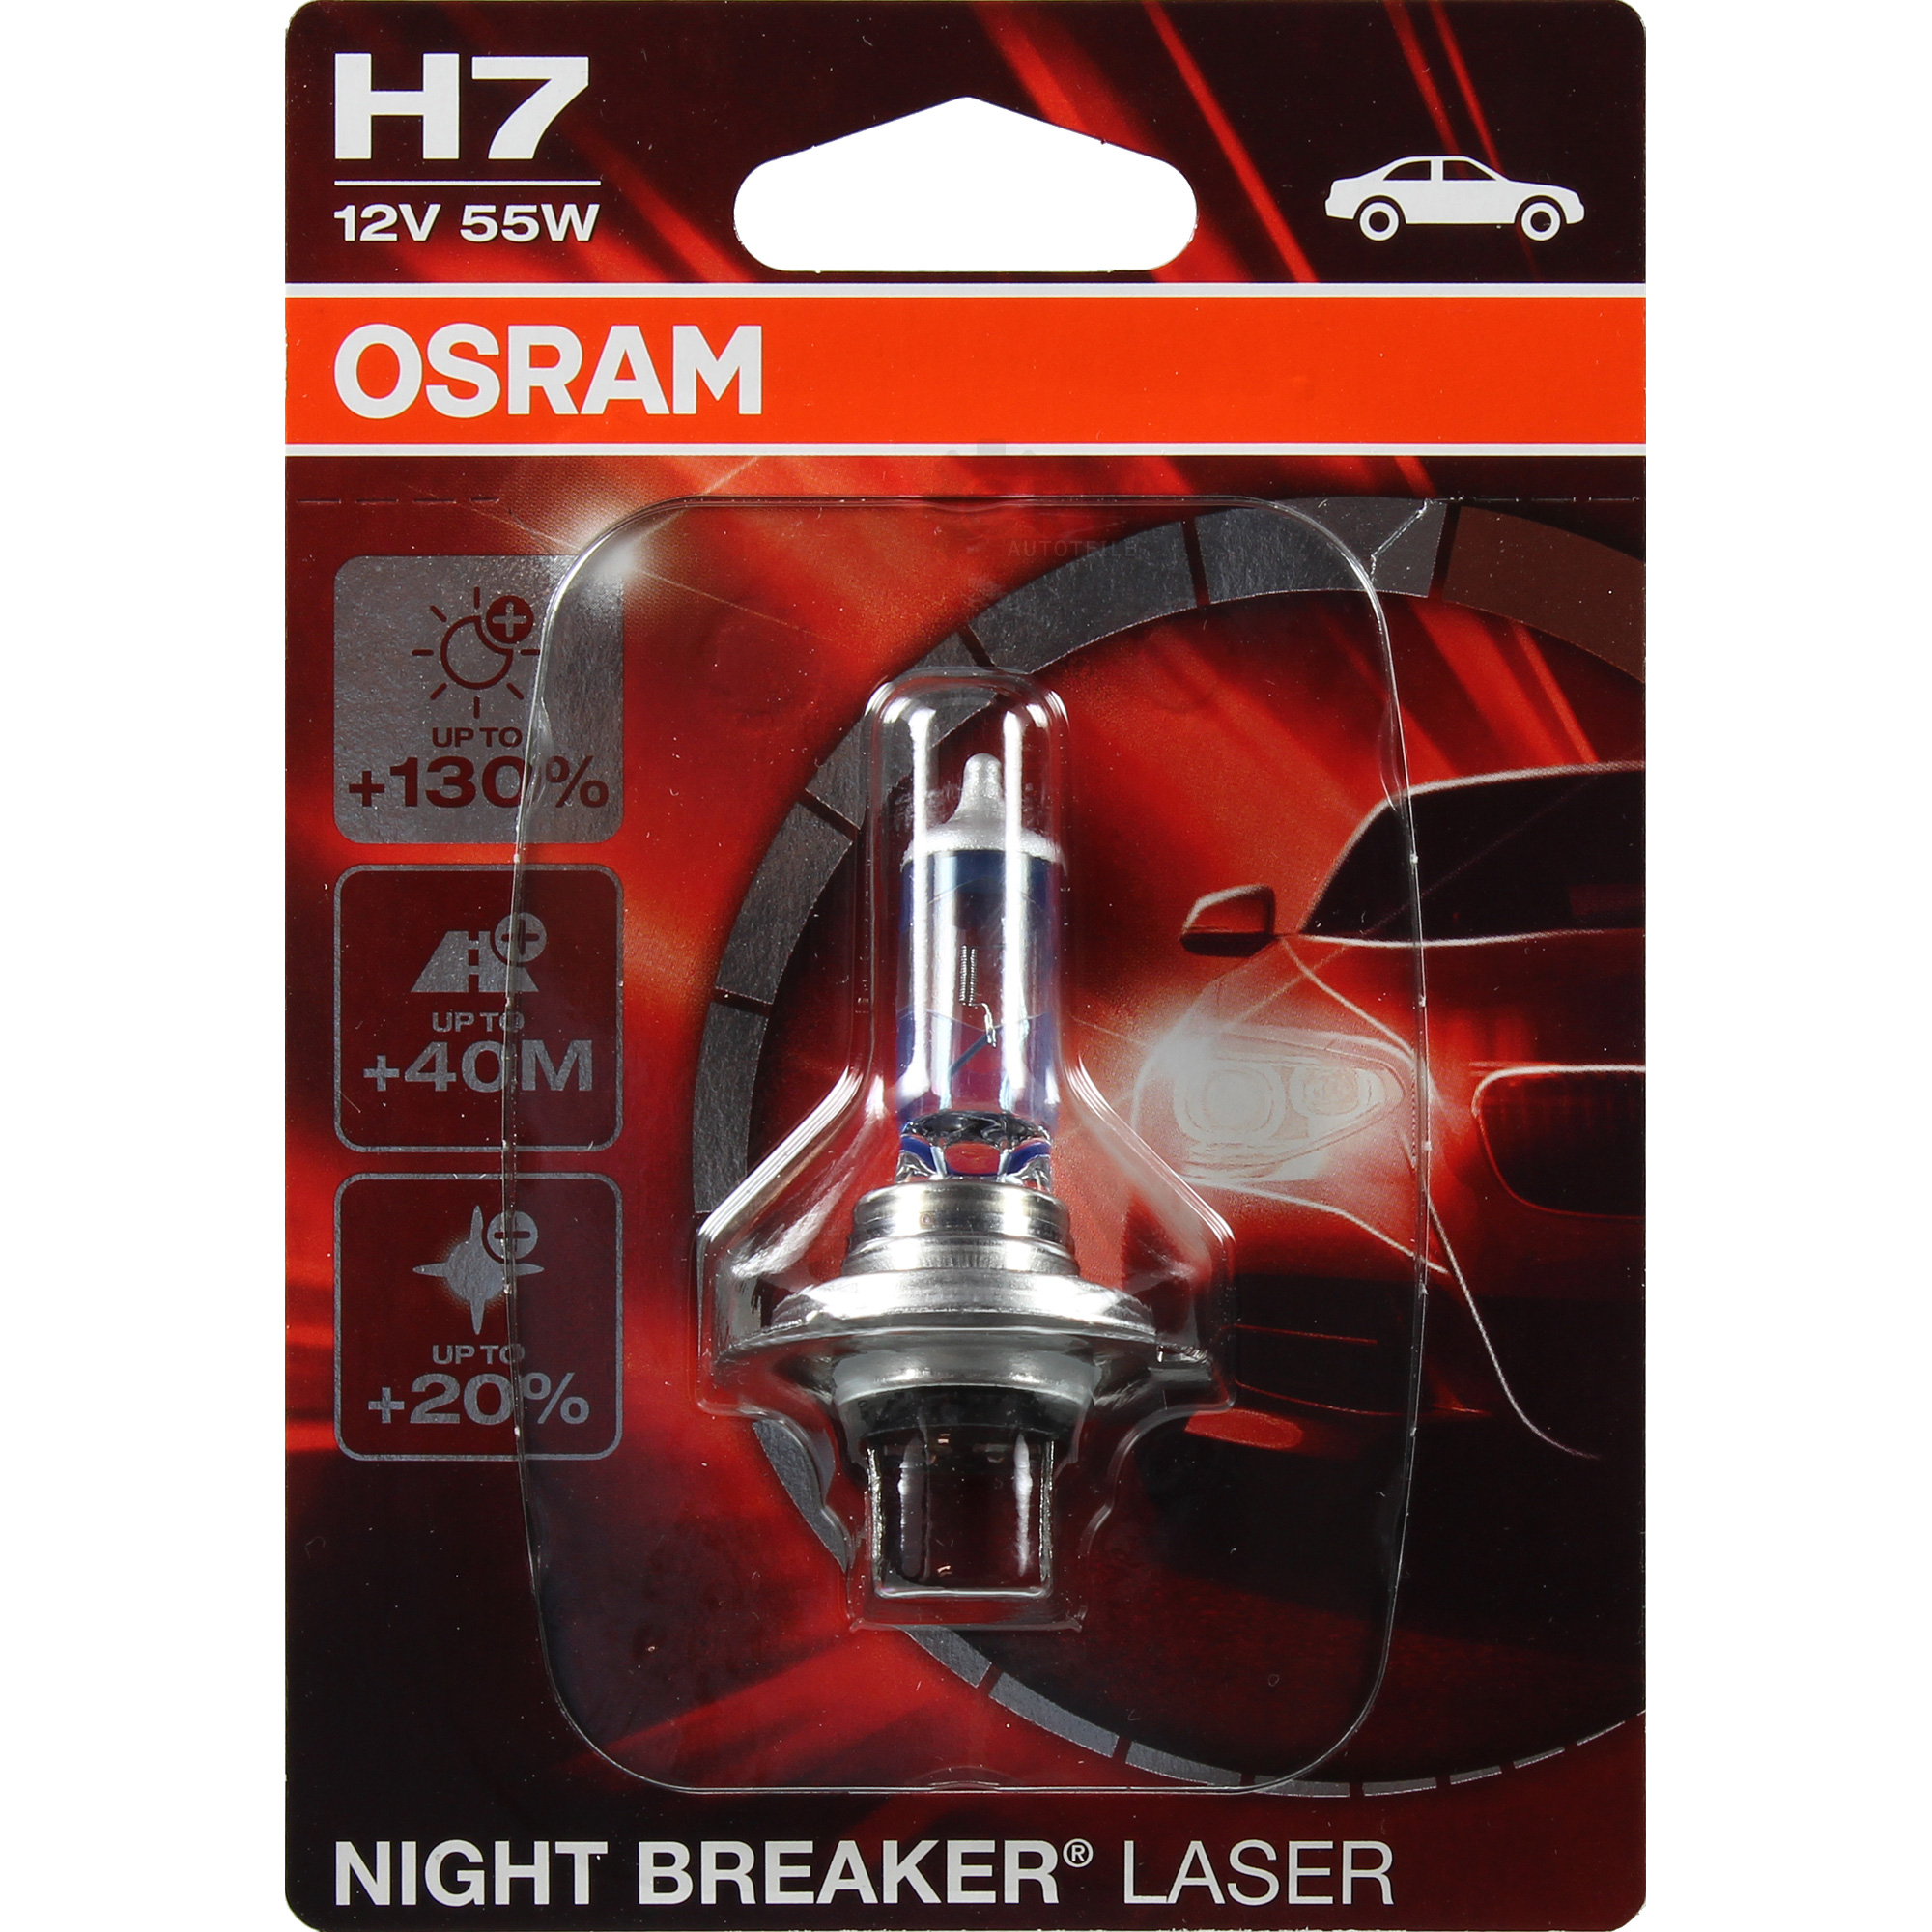 OSRAM Night Breaker LASER H7 12V 55W PX26D +130% 1 Stück Blister Lampe Birne